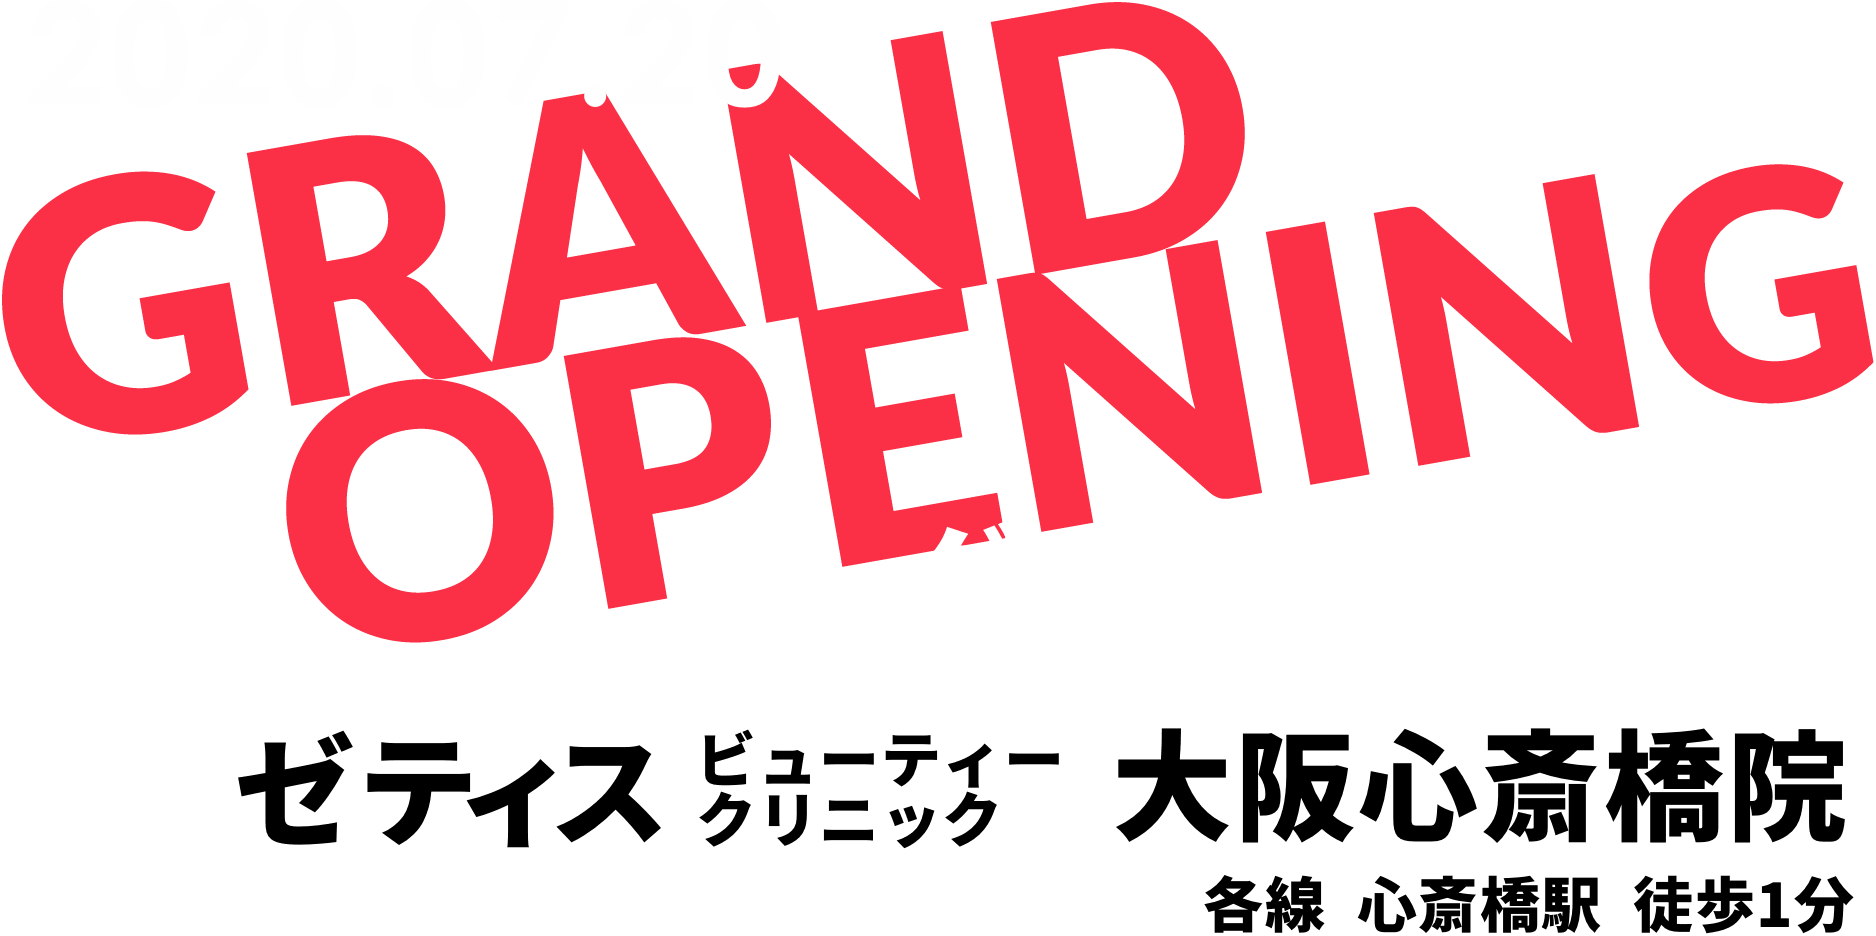 グランドオープン 2020.07.20 ゼティスビューティークリニック⼤阪⼼斎橋院 各線 ⼼斎橋駅 徒歩1分